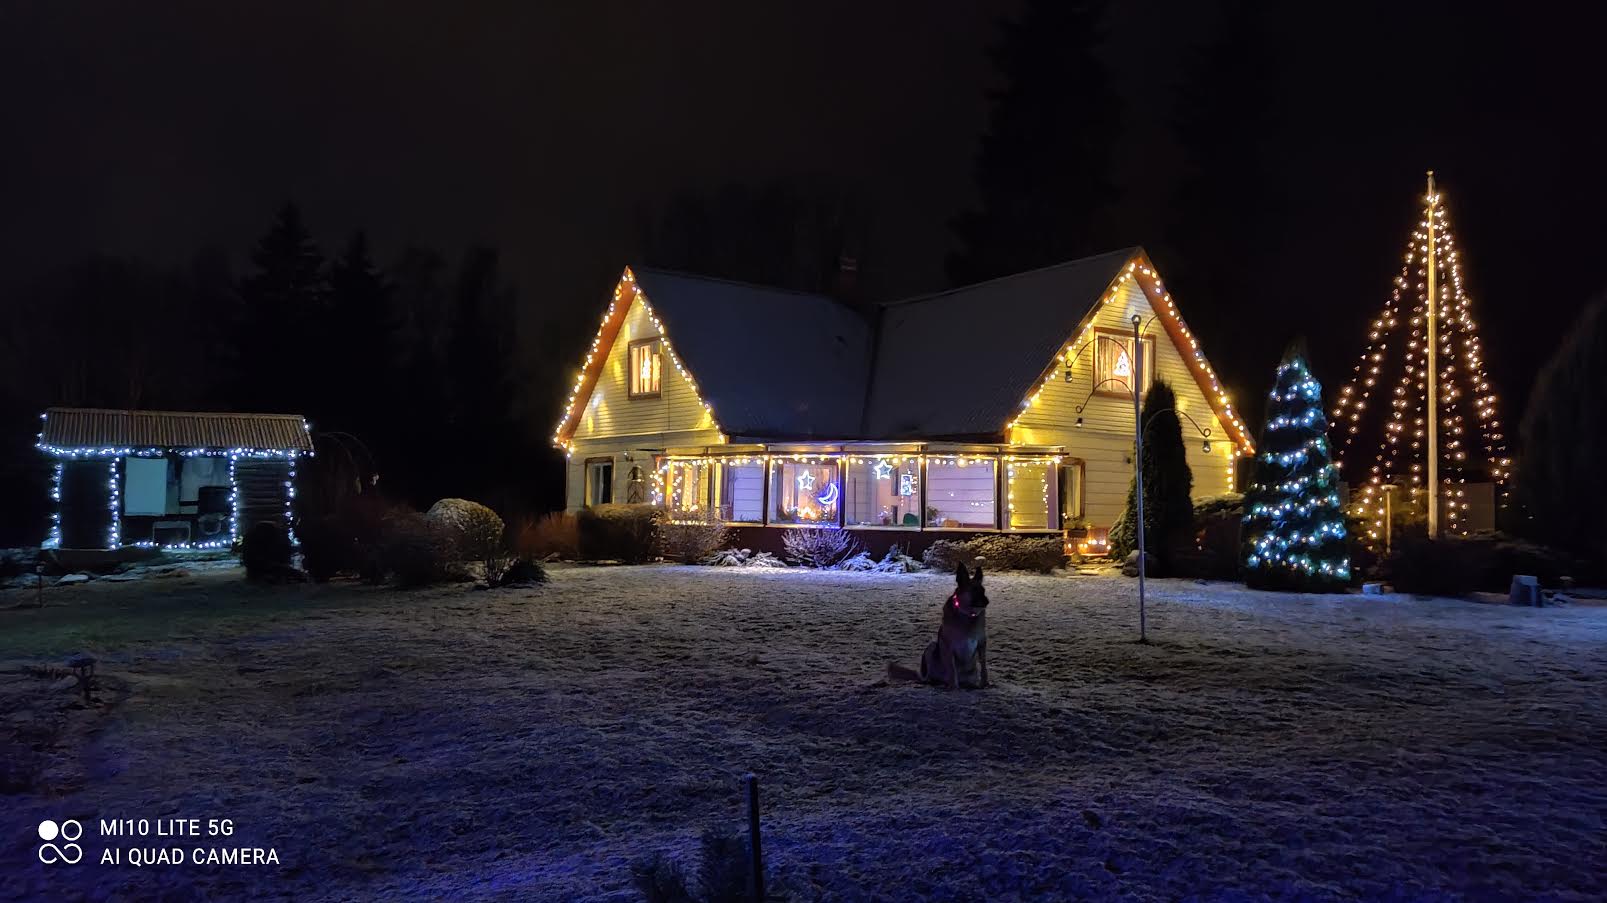 Rainer Hõraku jõulusäras kodu. „Kaunistatud kodu pakub jõuluvalgust inimeste ja ka enda südamesse!” Foto: ERAKOGU